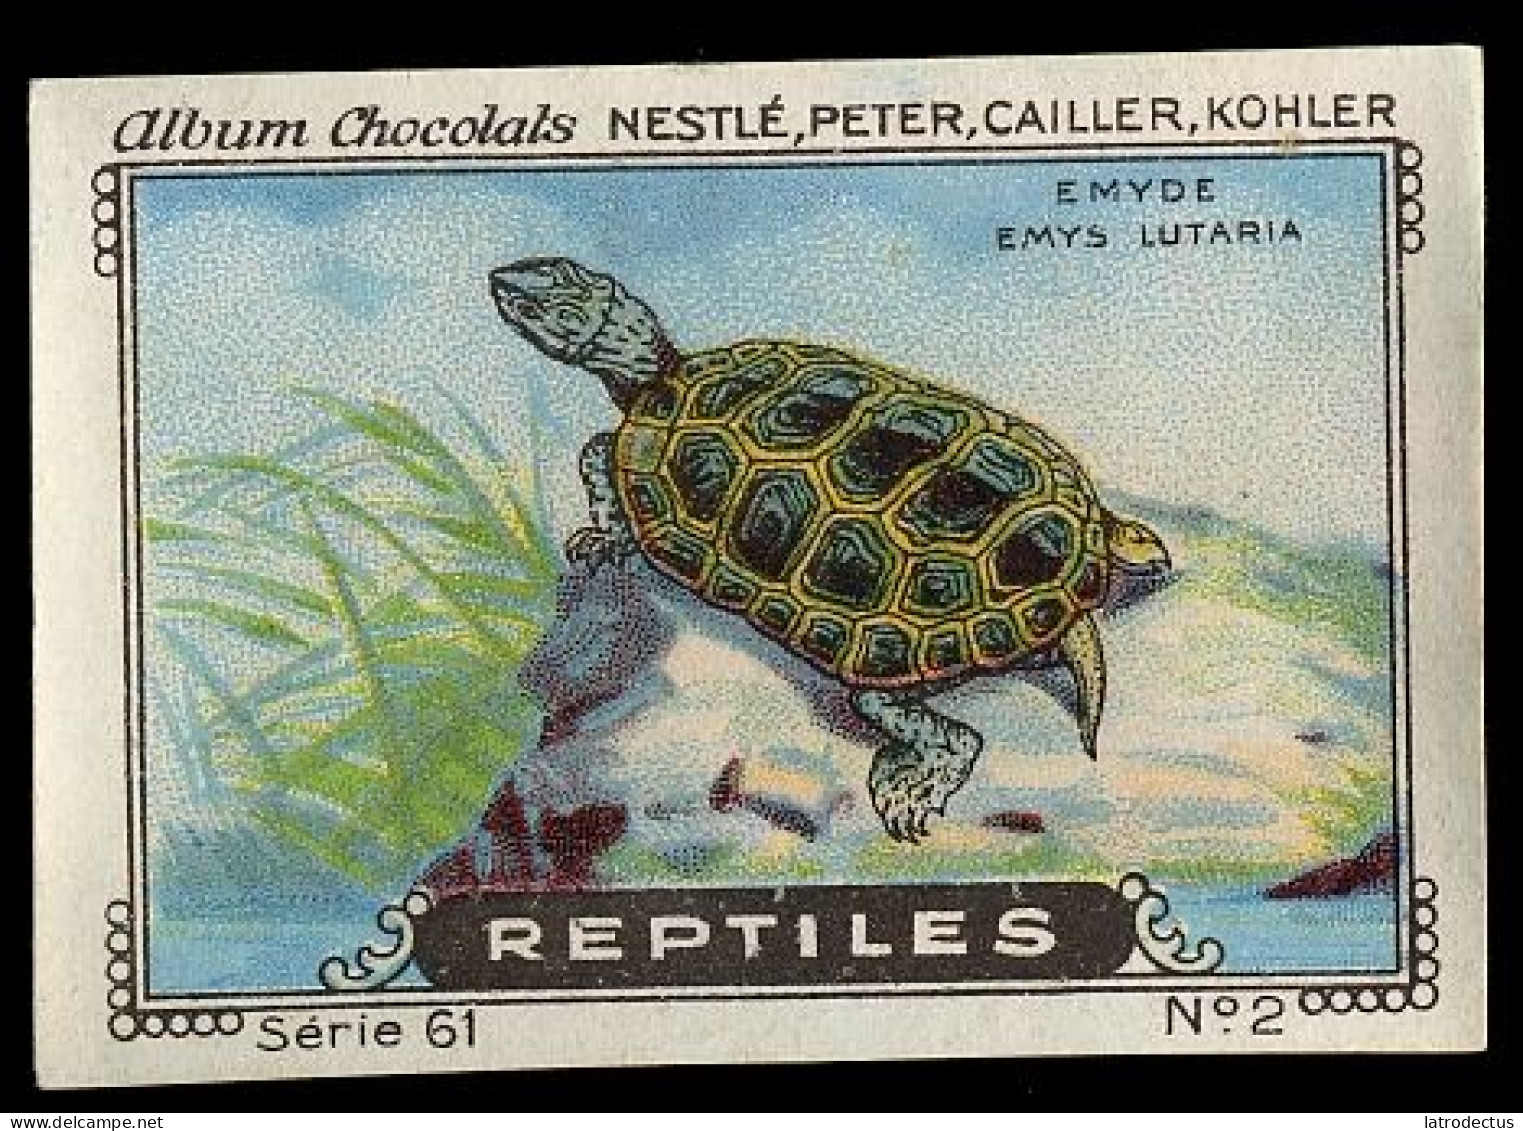 Nestlé - 61 - Reptiles - 2 - Emyde, Emys Lutaria - Nestlé